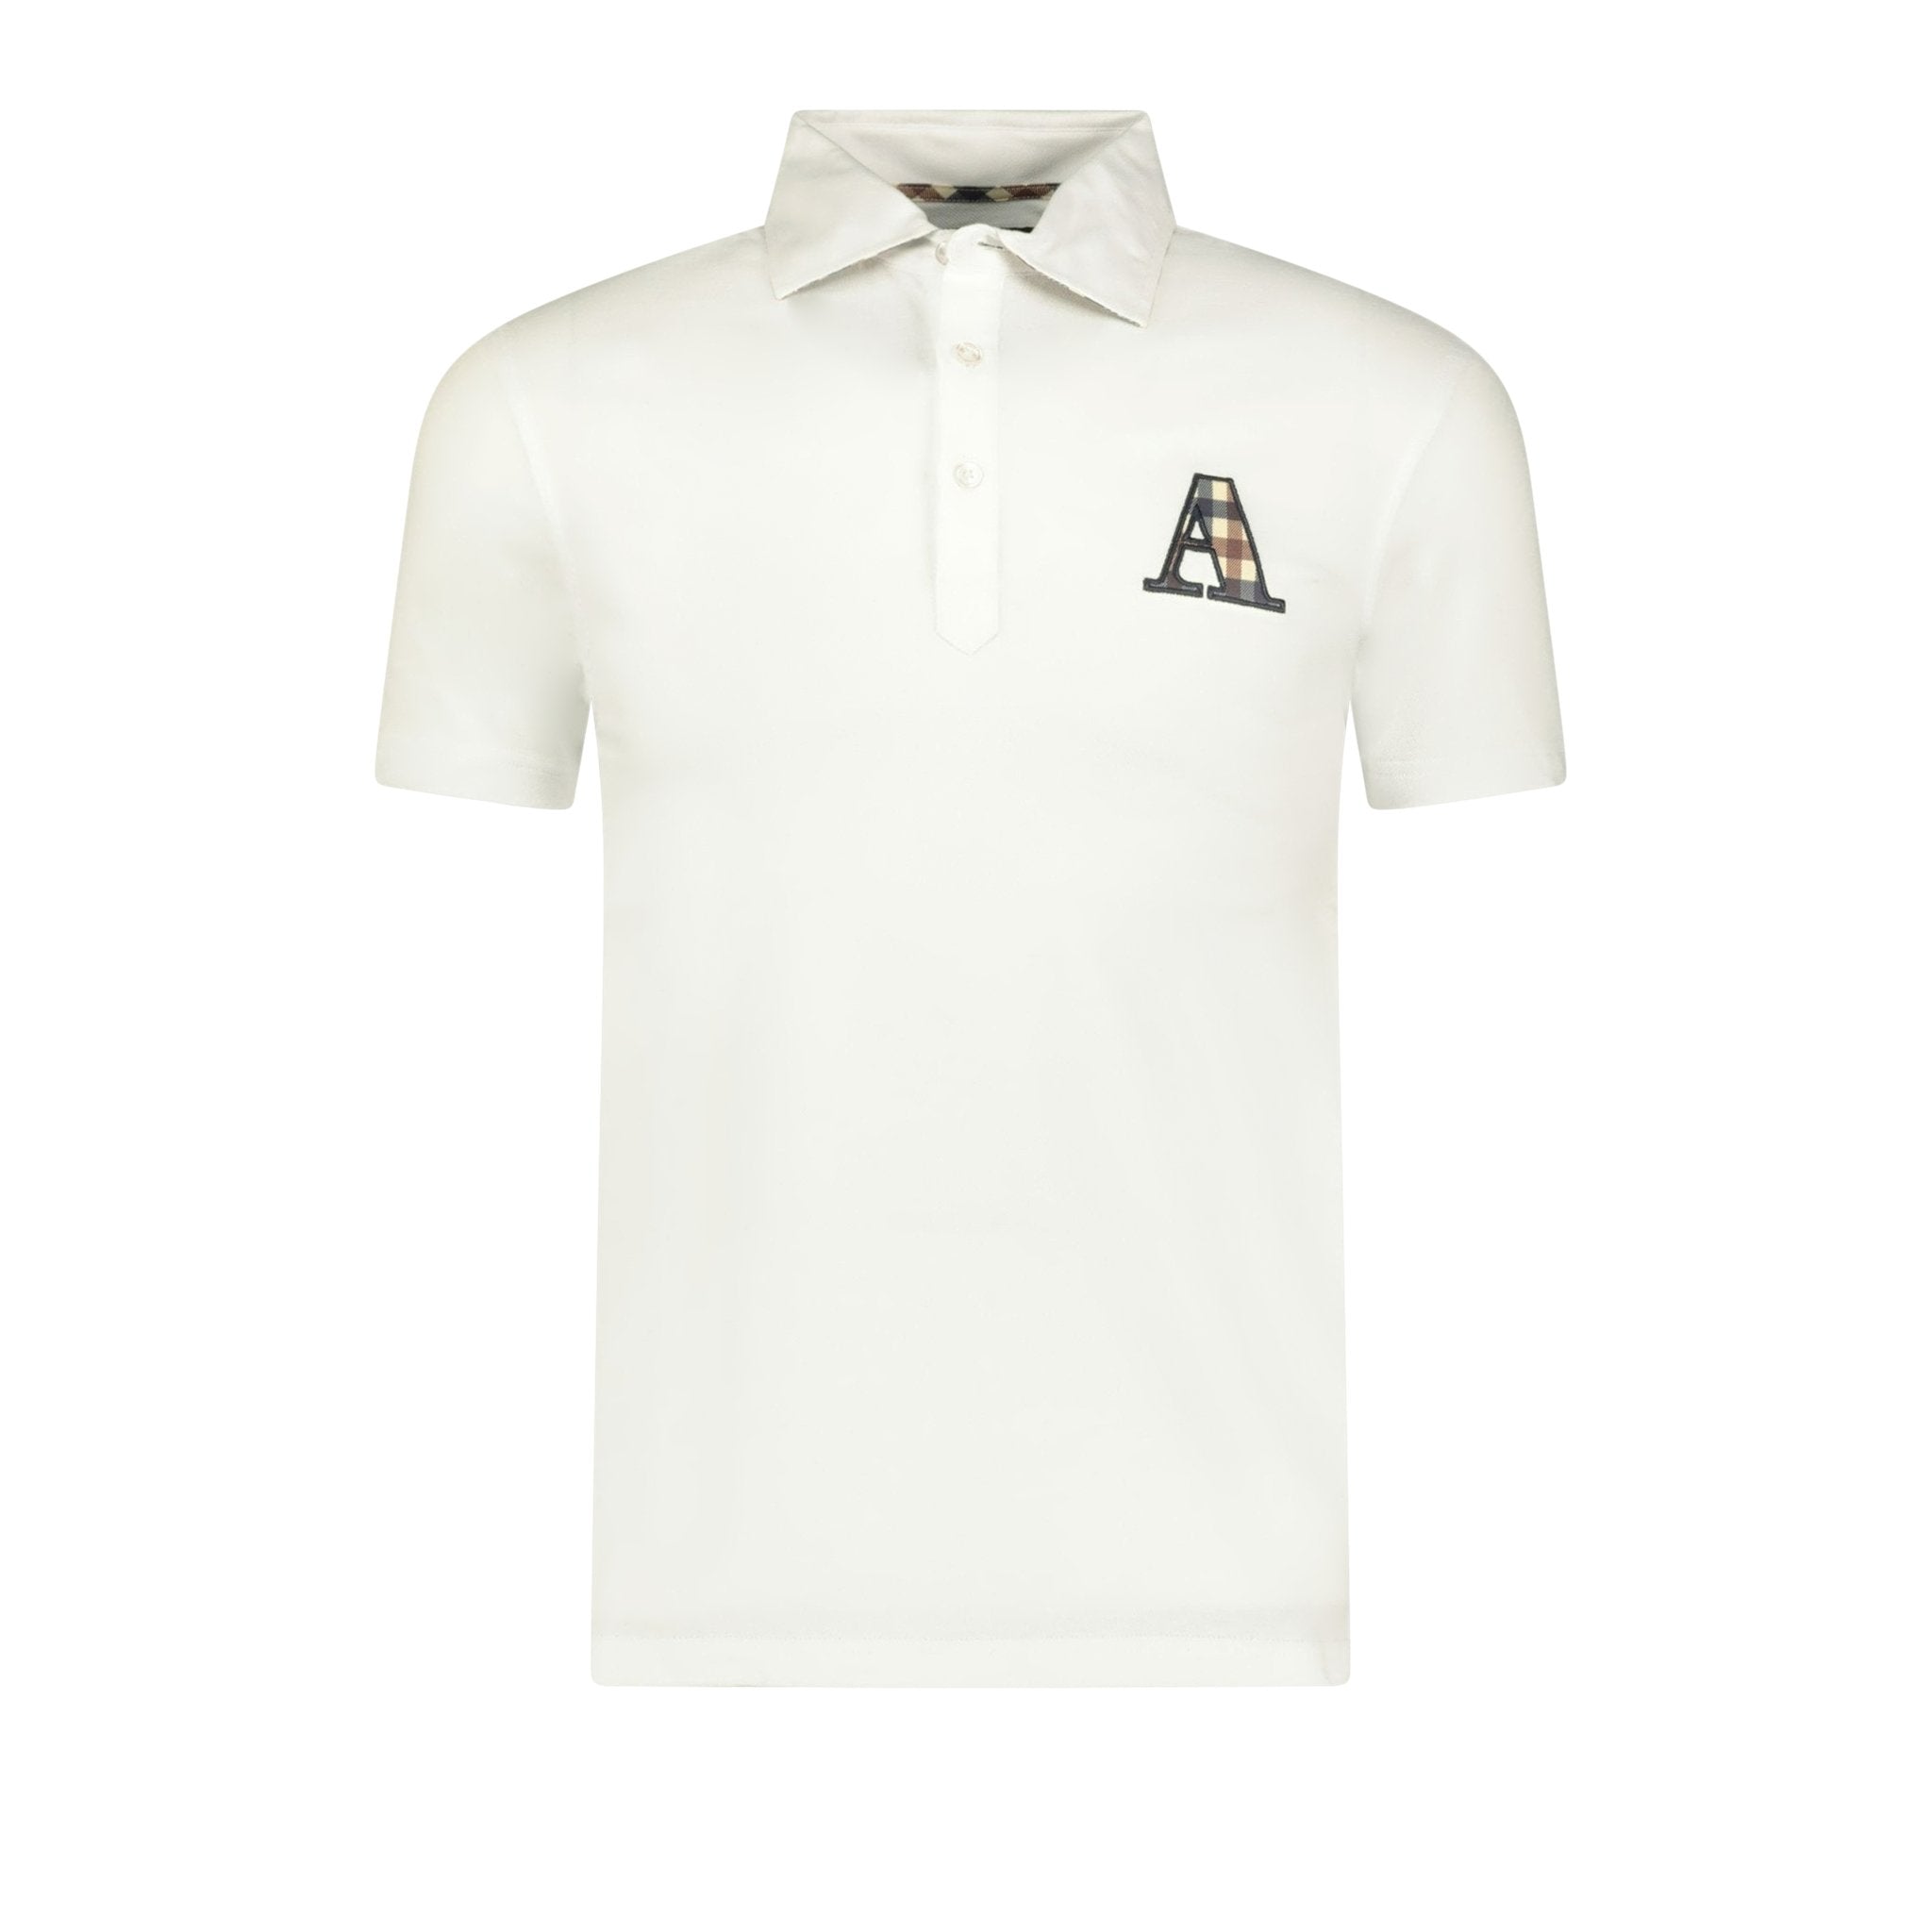 Aquascutum A Check Logo T-Shirt White